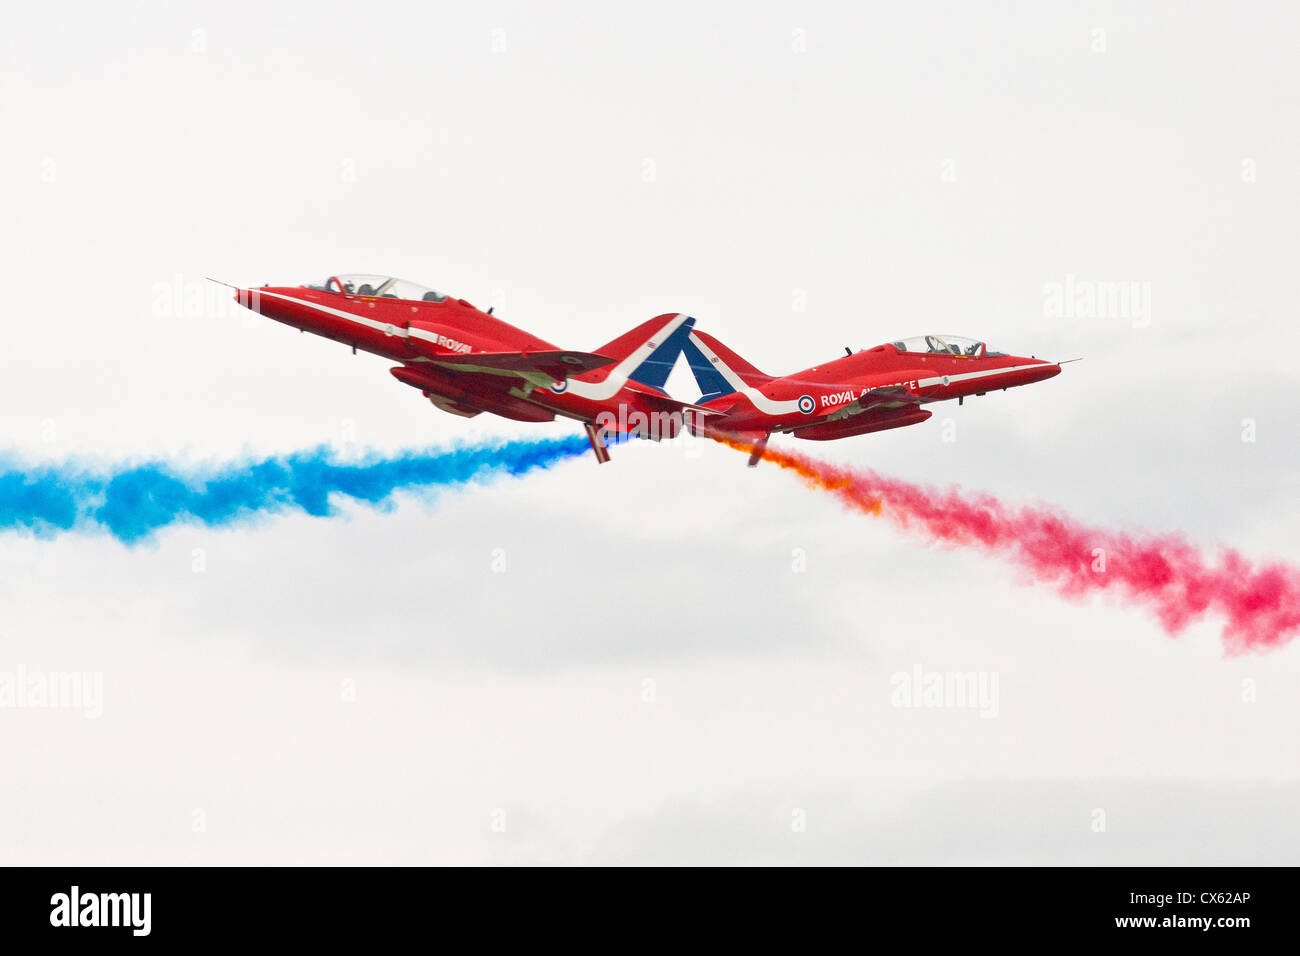 RAF frecce rosse display sincronizzato team coppia eseguire passano vicino al Best of British mostrano Cotswold (Kemble EGBP) Aeroporto. JMH6096 Foto Stock